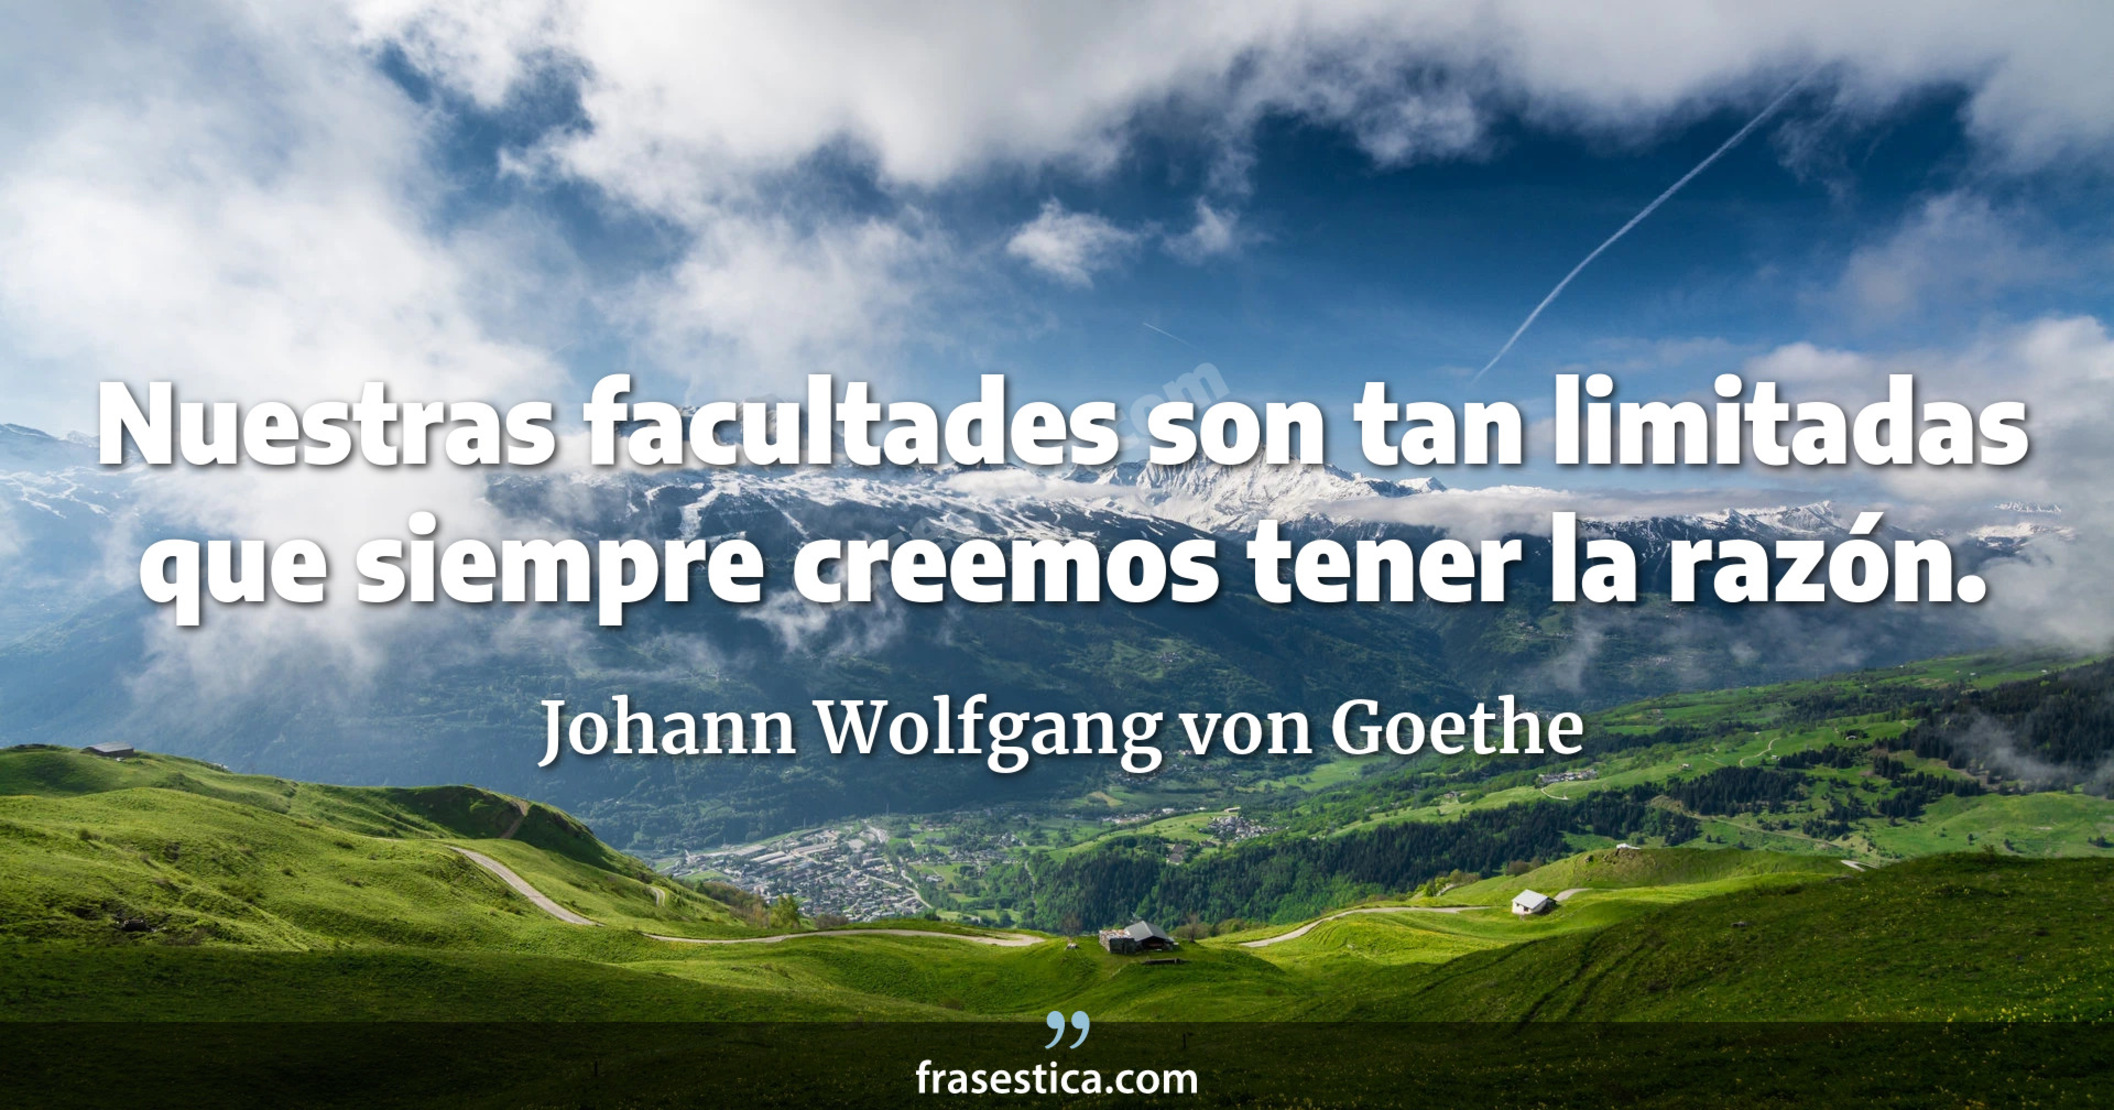 Nuestras facultades son tan limitadas que siempre creemos tener la razón. - Johann Wolfgang von Goethe